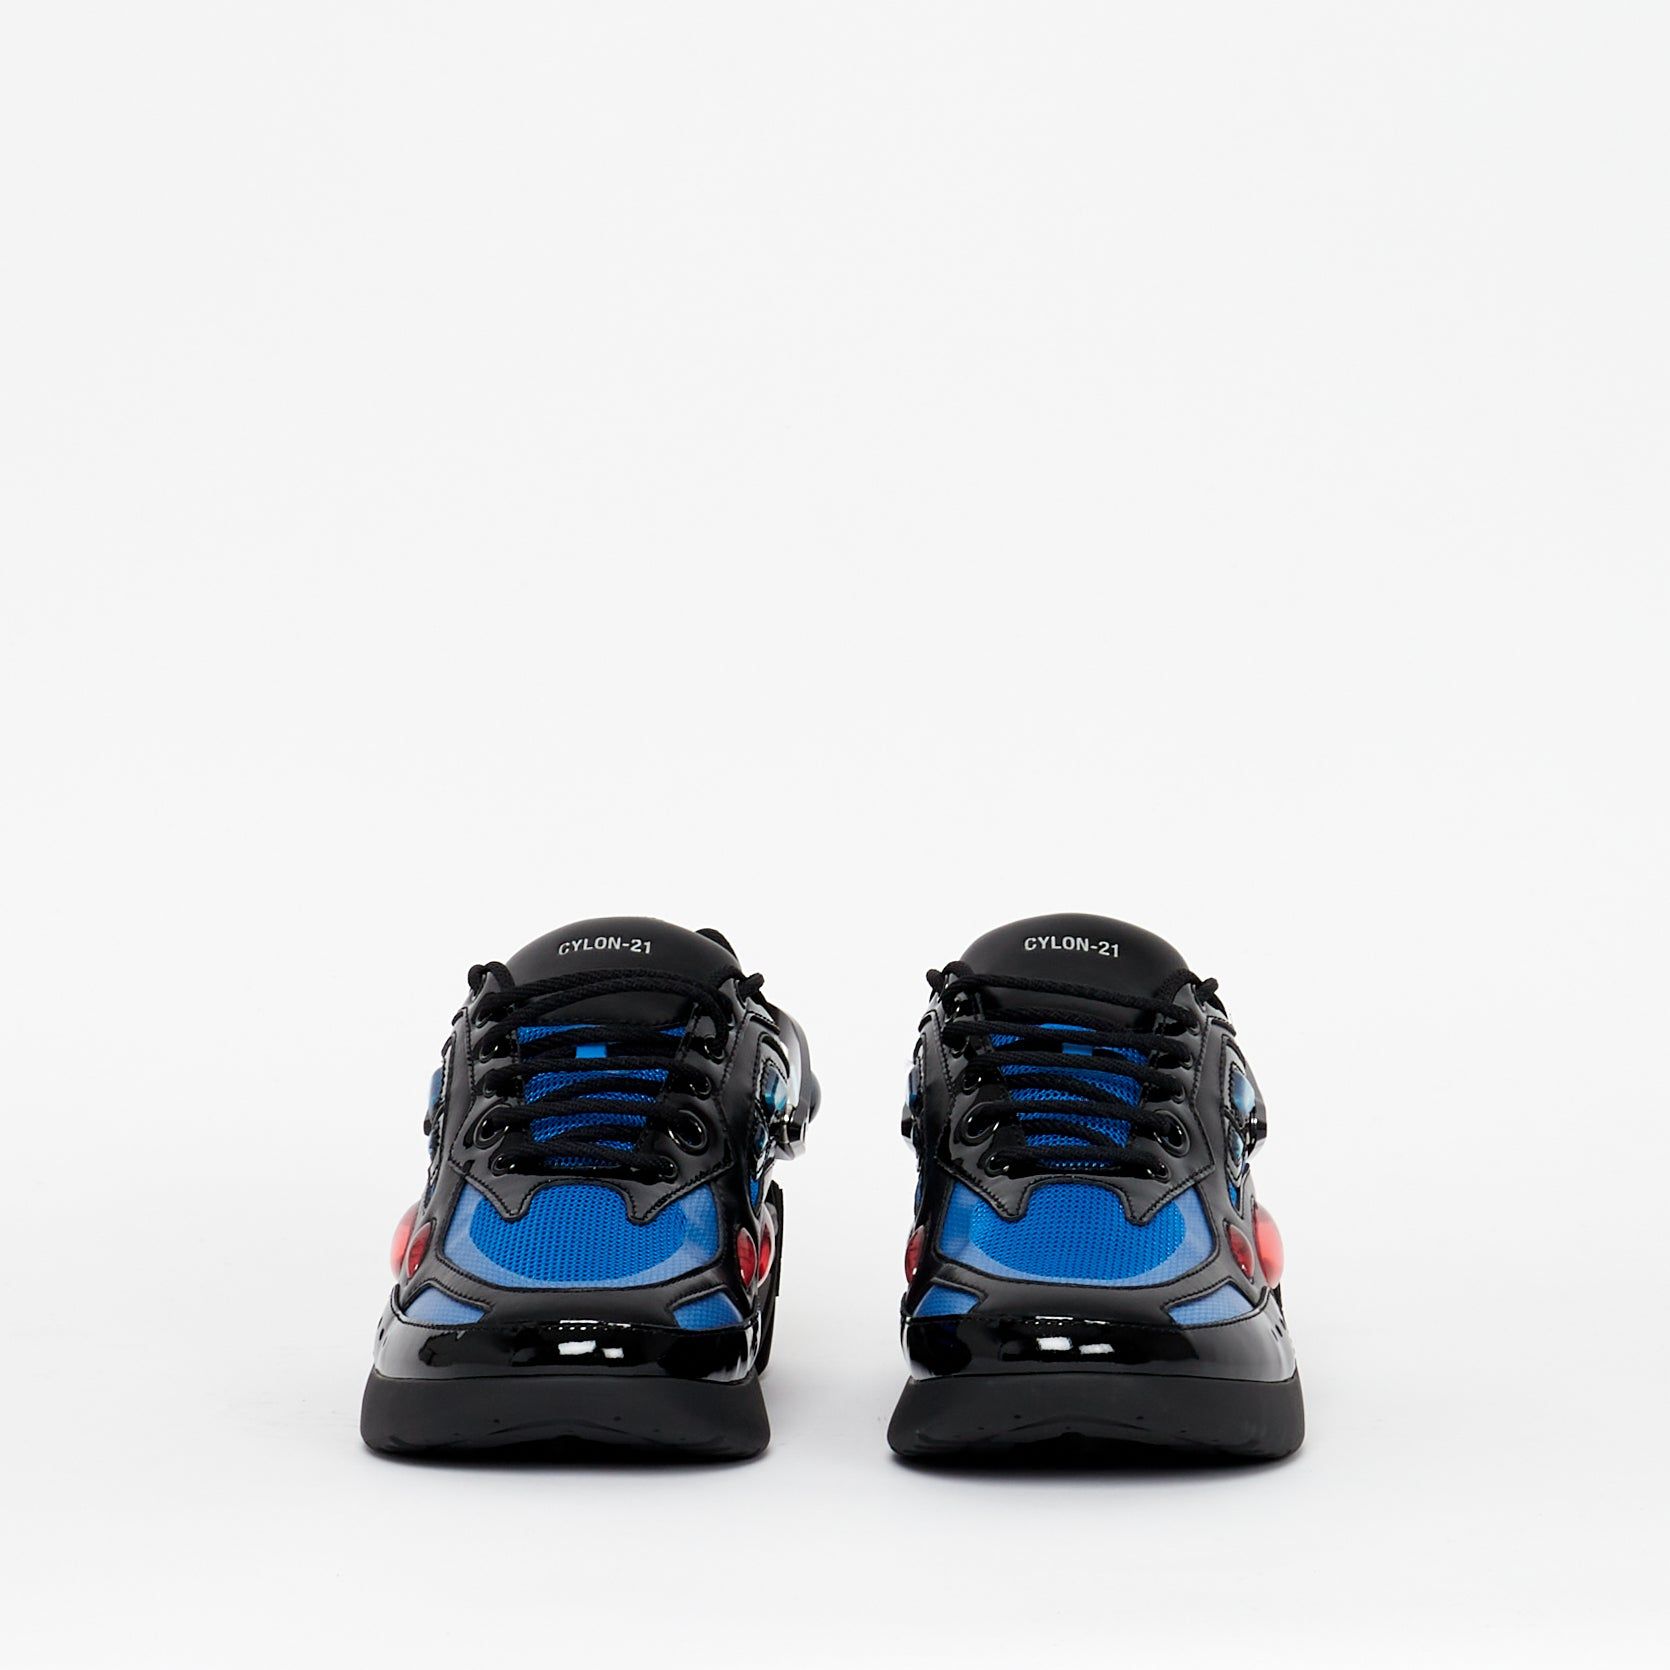 Sneaker Cylon 21 Black Blue - Lesthete raf simons